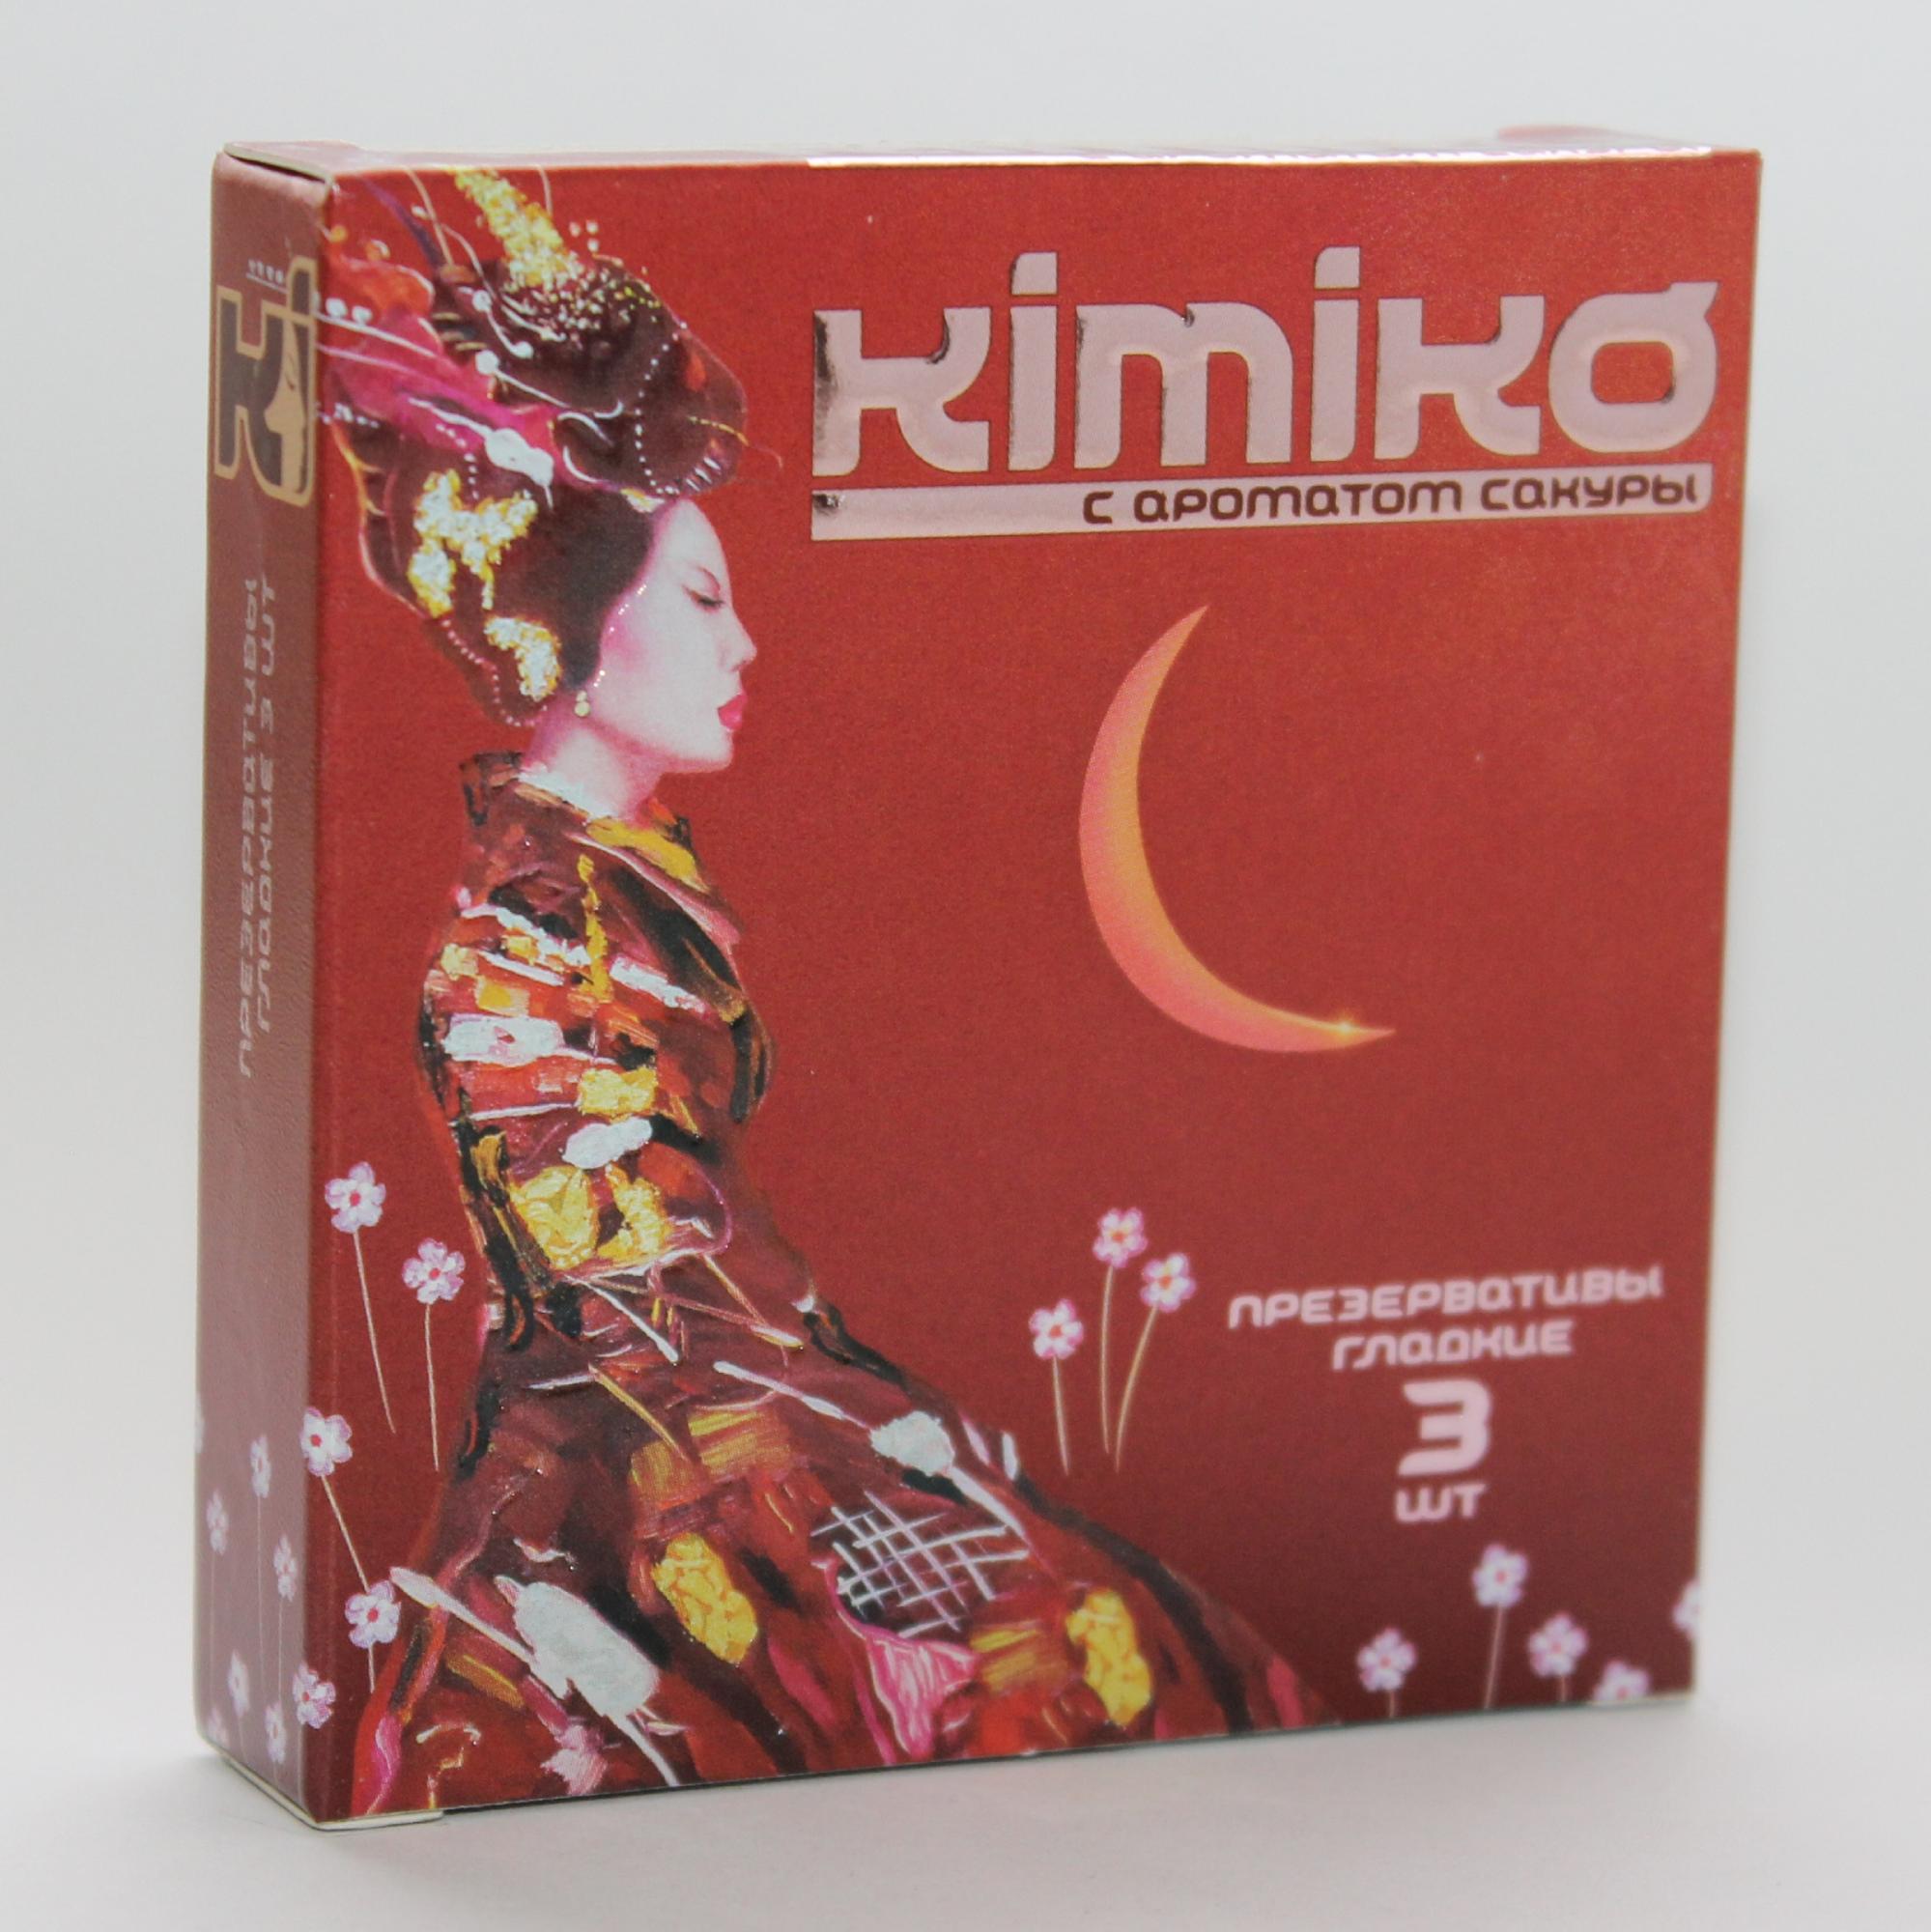 Презервативы KIMIKO  с ароматом сакуры,  3 шт.